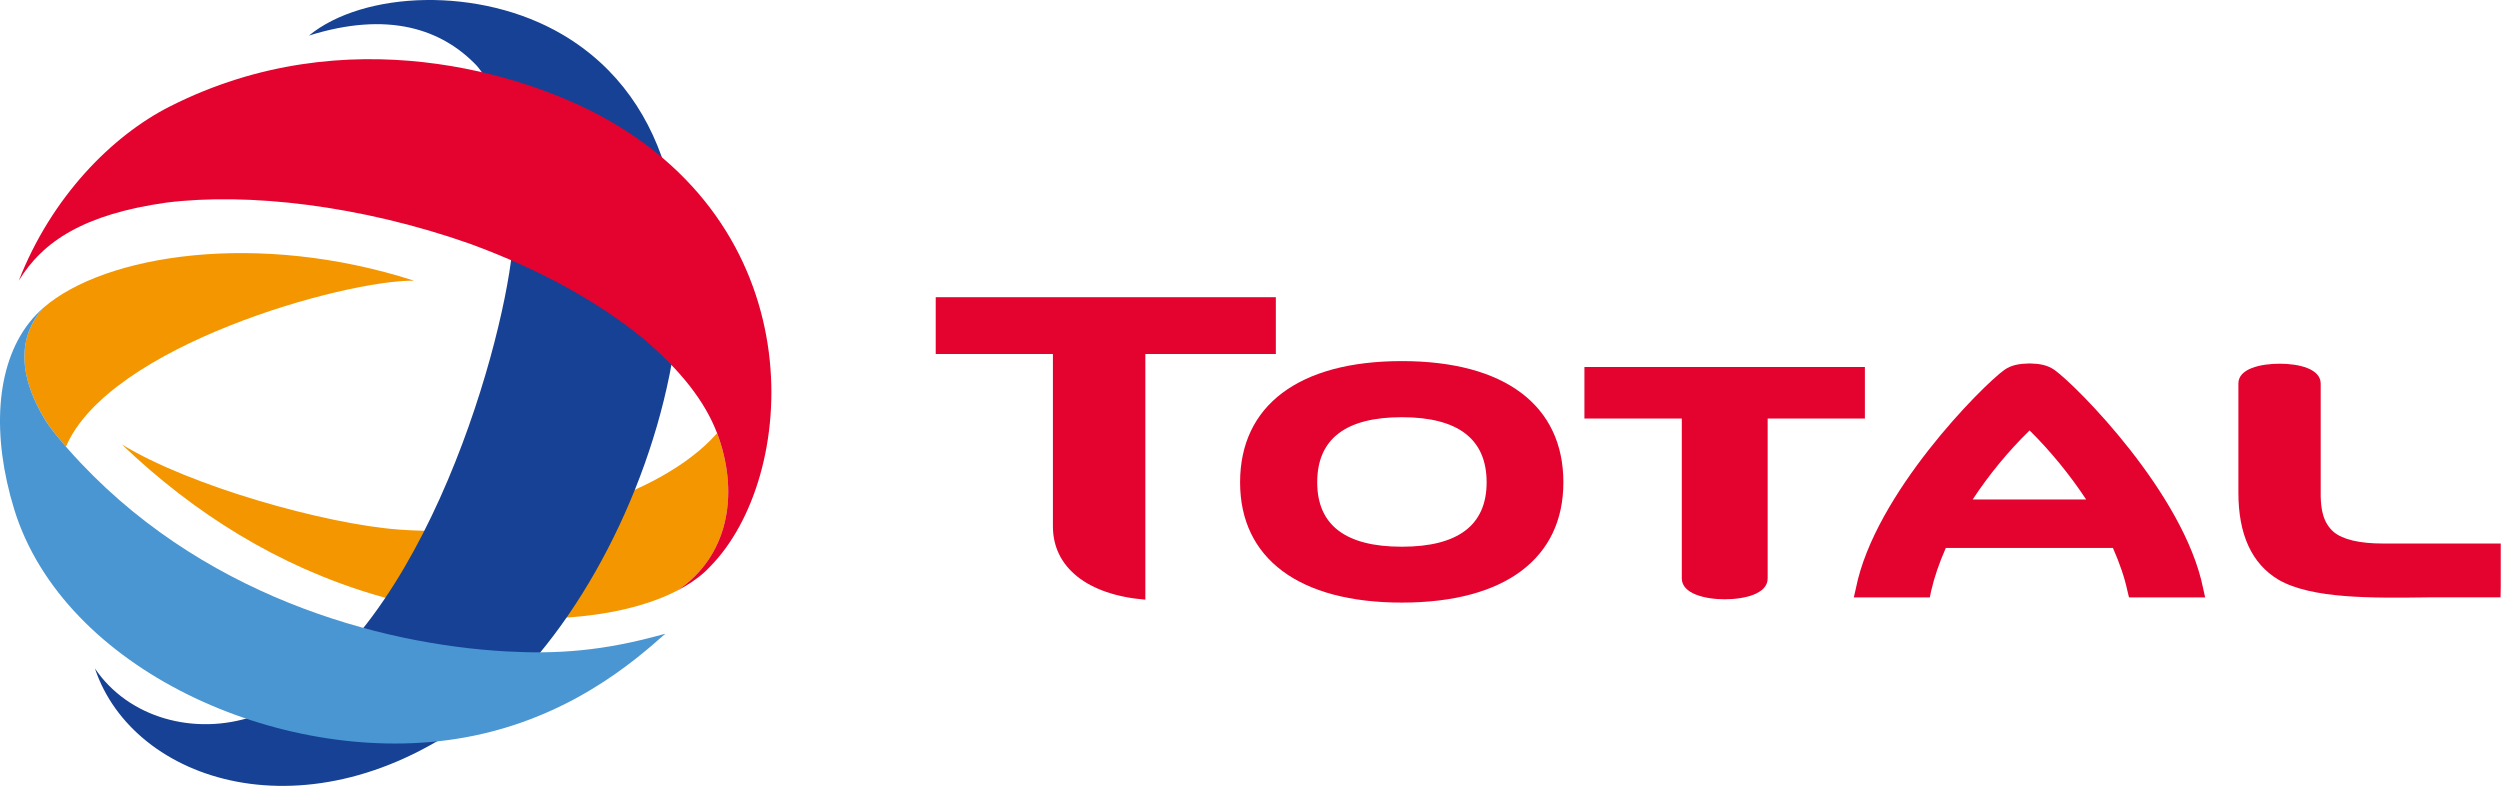 Total compagnie française provenant de la fusion entre Total, Fina et Elf